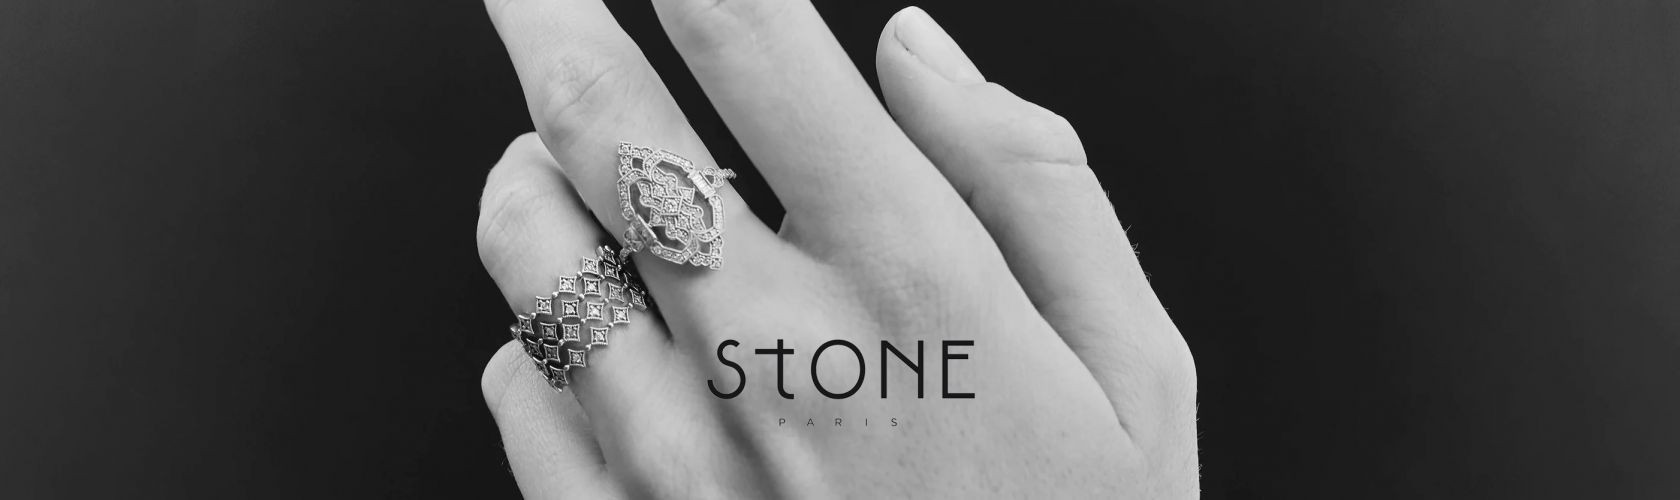 Toutes vos idées cadeaux de bijoux Stone Paris sont à la Bijouterie David Mann à Liège